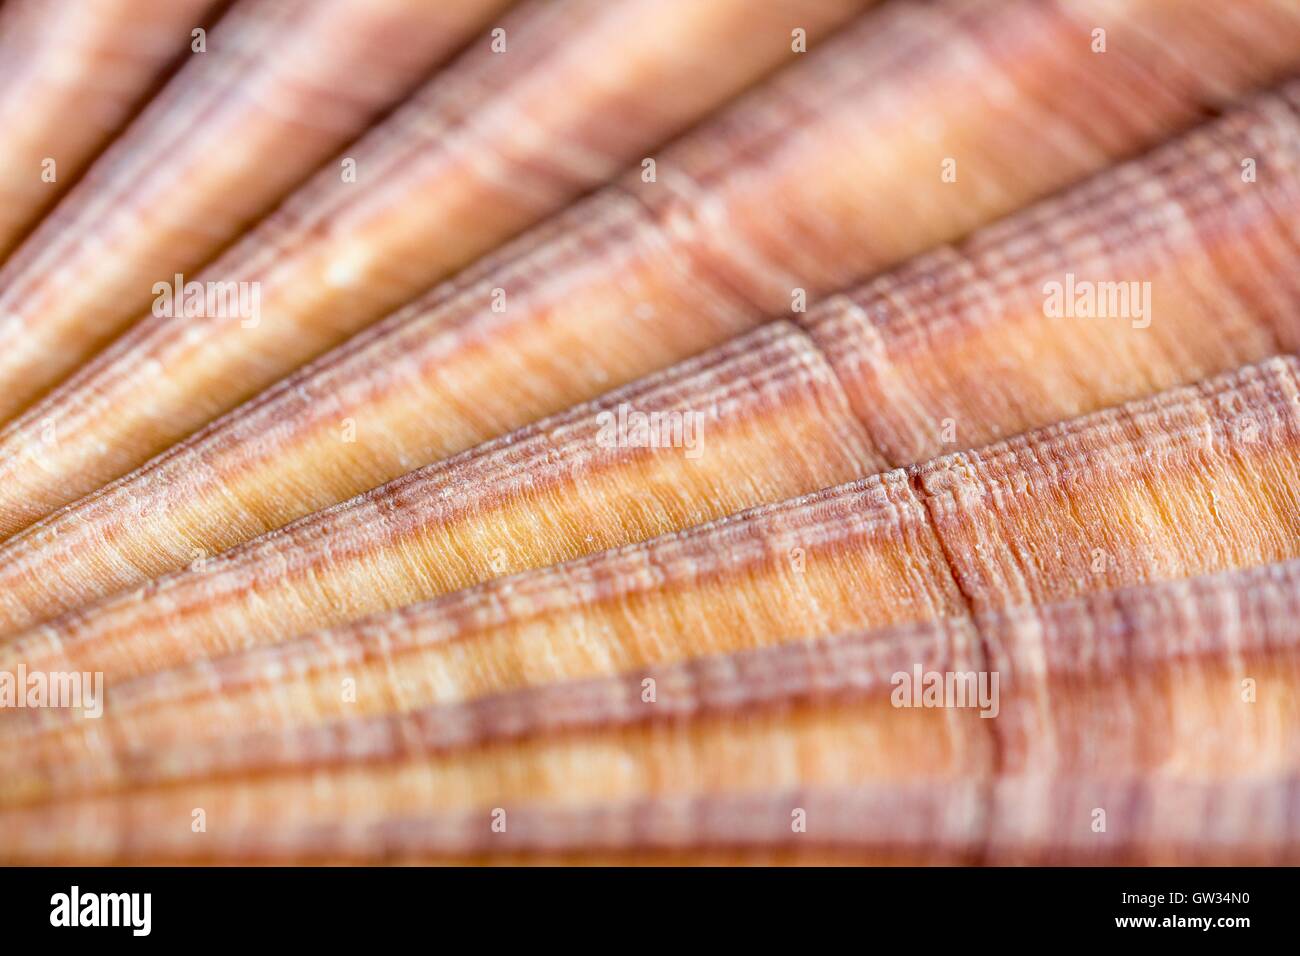 Rosso-smerlo nervata shell, macrophotograph. Il guscio di un rosso-smerlo nervata (Aequipecten glyptus), un marine molluschi bivalvi. I gusci dei molluschi bivalvi sono costituiti da due parti di articolazione o valvole. Orizzontale formato oggetto di questa sezione dell'immagine: 15 mm. Foto Stock